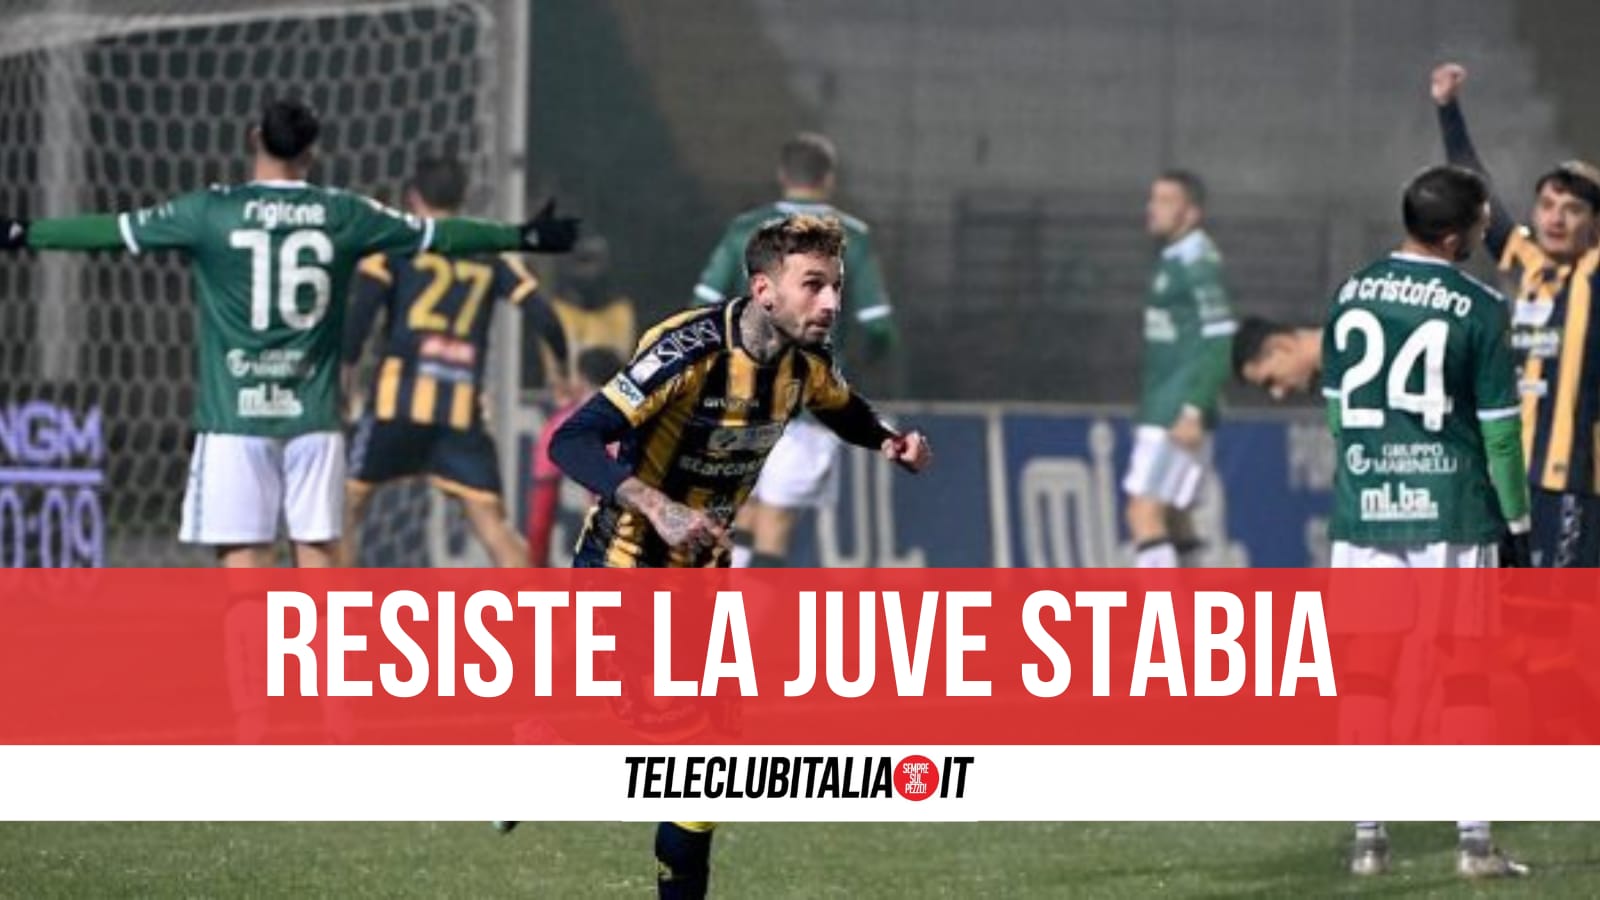 La Juve Stabia resiste ad Avellino, cade la Casertana, ok Benevento, Sorrento e Giugliano